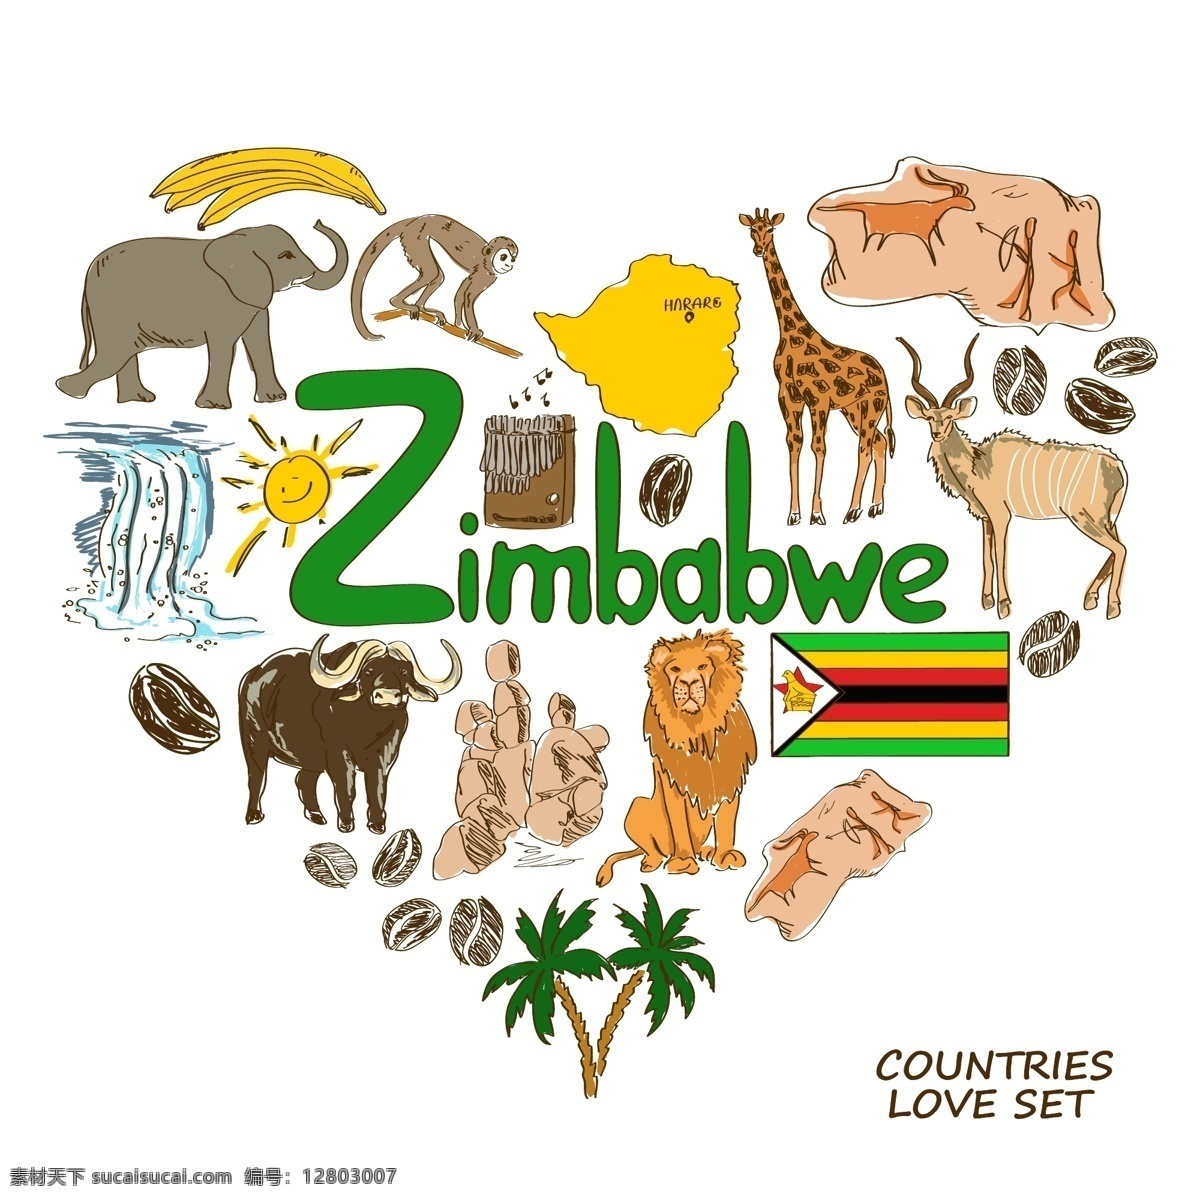 津巴布韦 国家 元素 国家元素 国家象征 手绘 矢量 zimbabwe 设计素材库 文化艺术 绘画书法